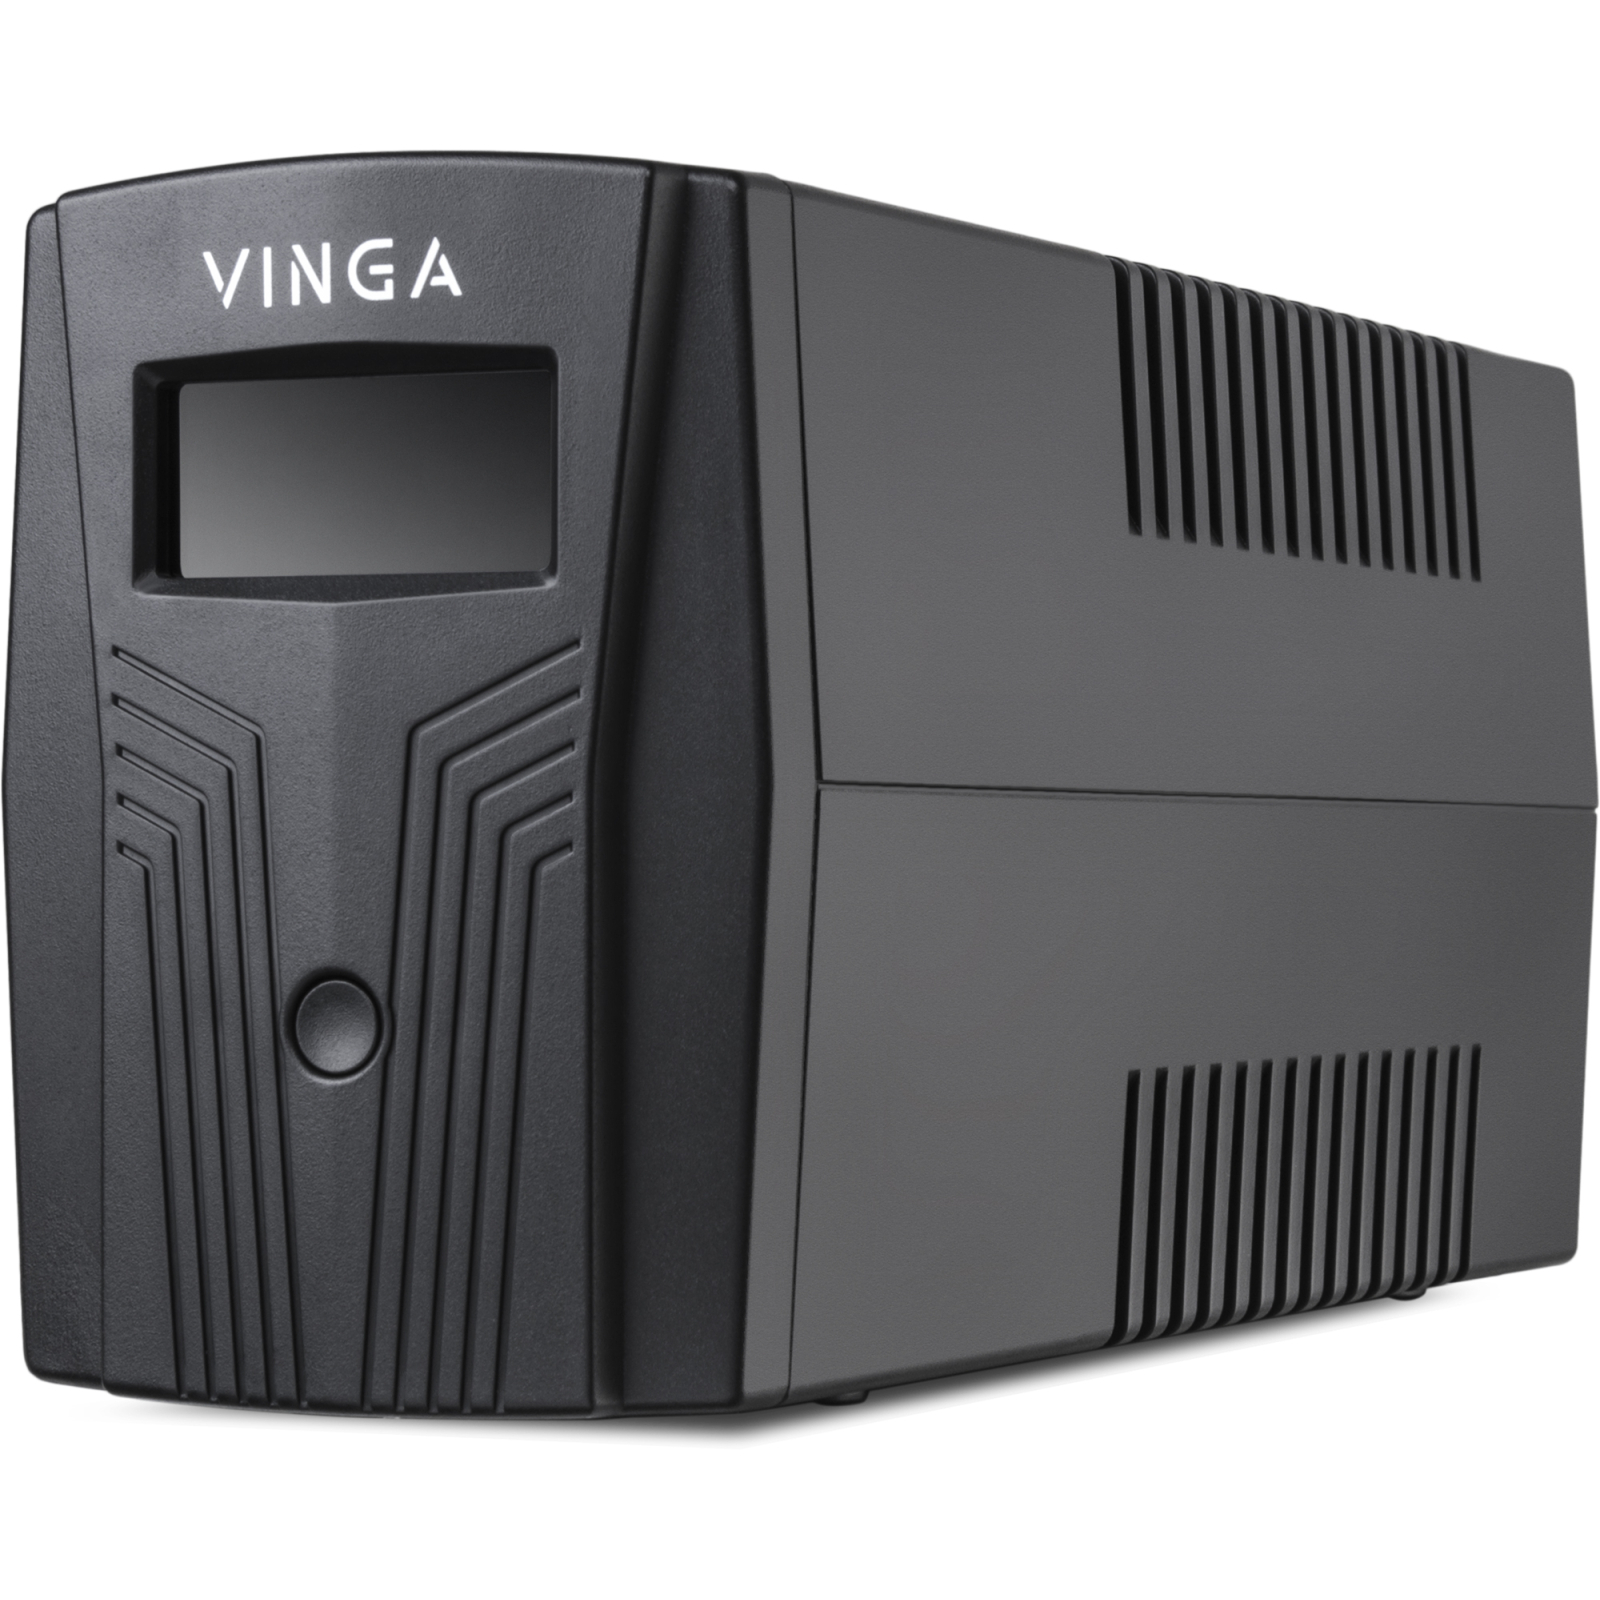 Источник бесперебойного питания Vinga LCD 1200VA plastic case (VPC-1200P) изображение 4